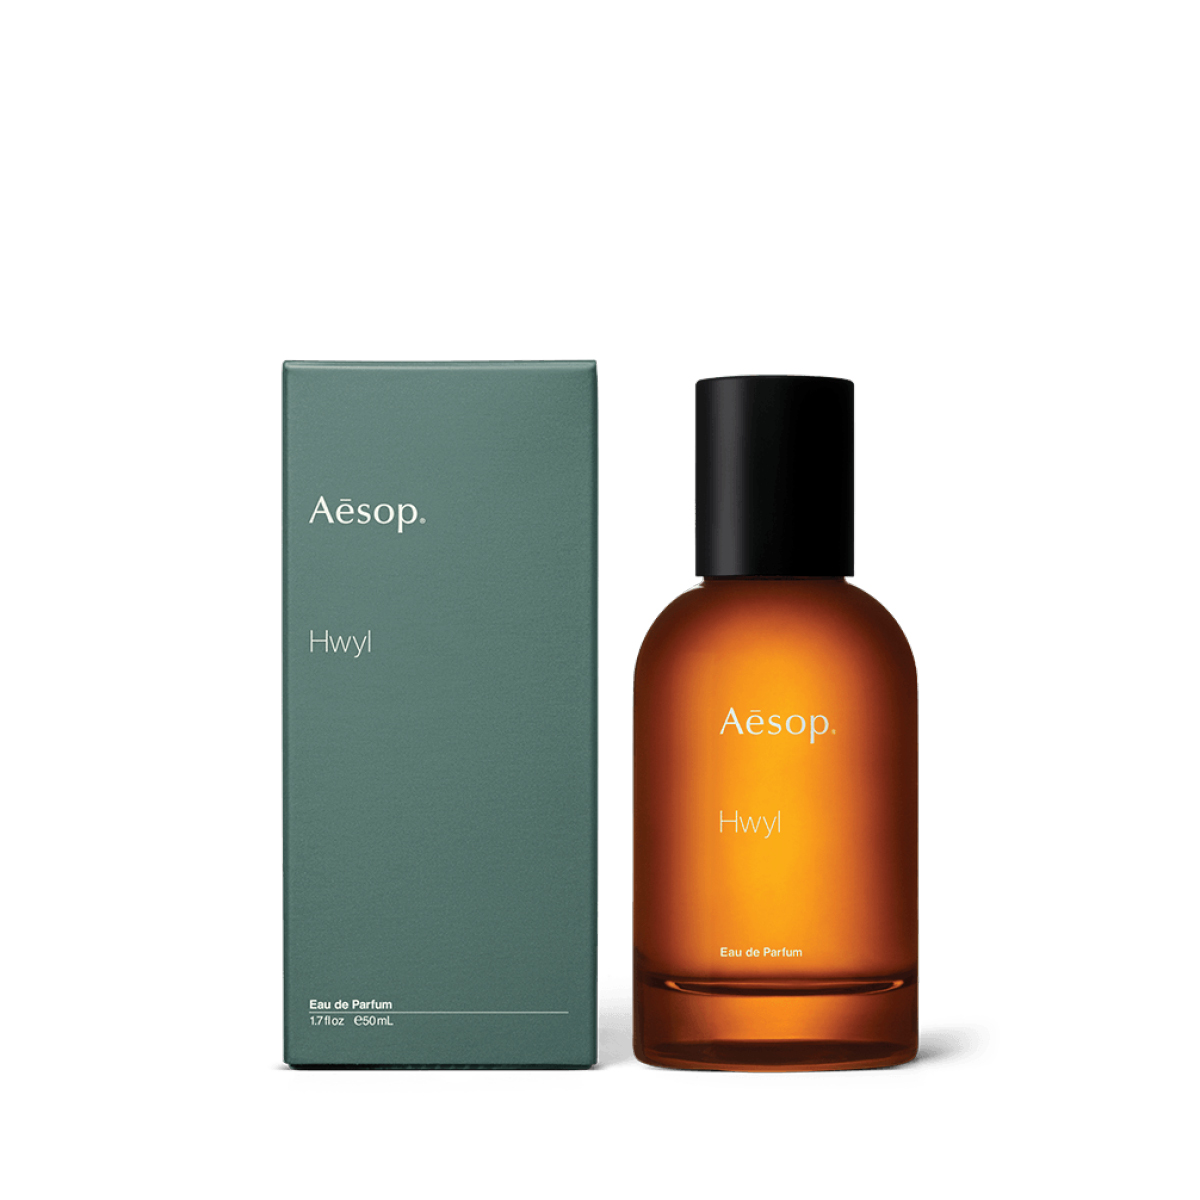 Aesop-Fragrance-Hwyl-Eau-de-Parfum-50mL-Hybris-Large-684x668px.jpg